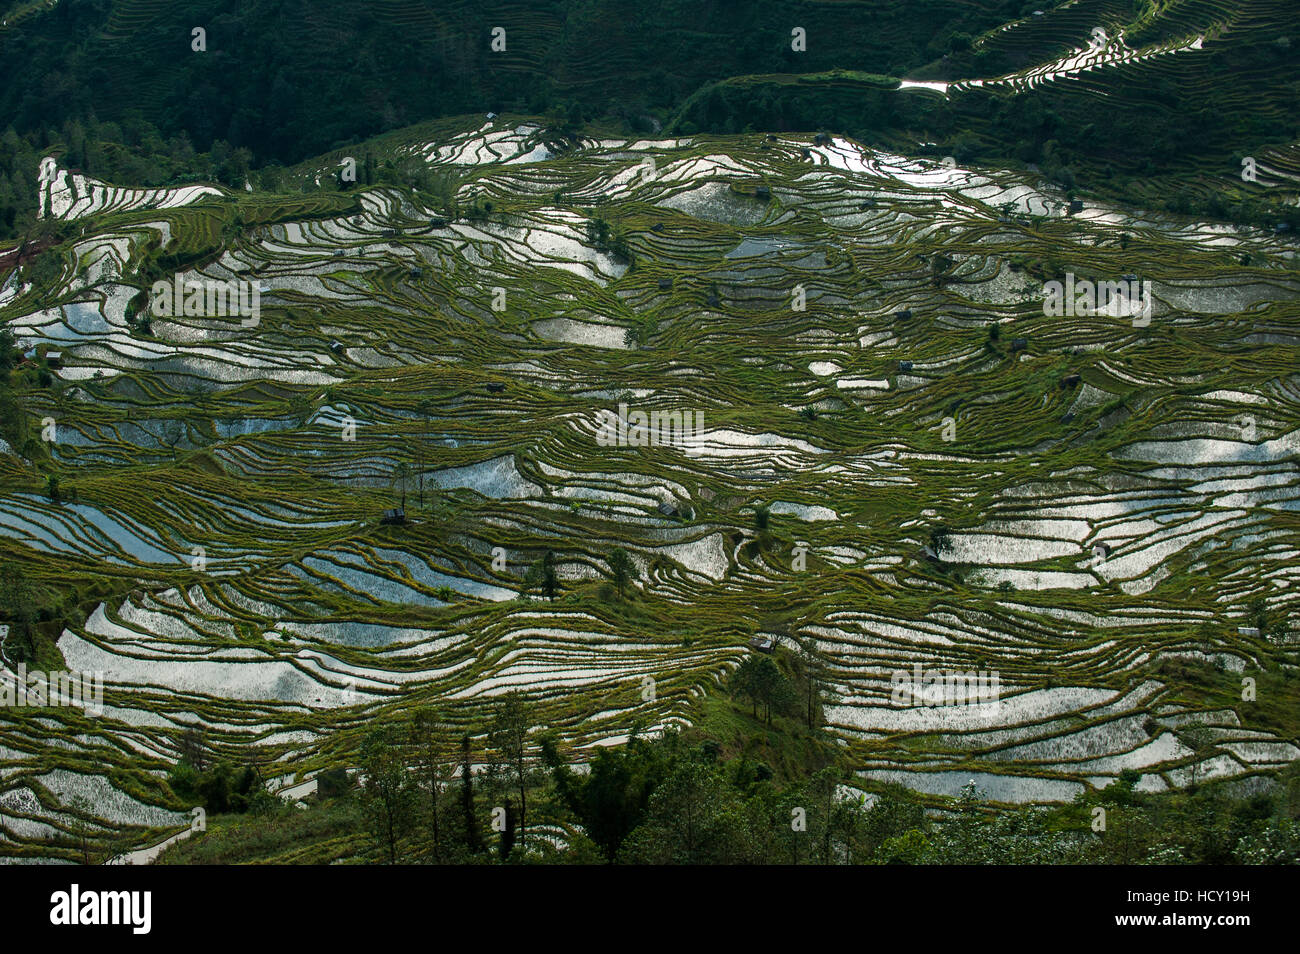 Altmodisch über Hunderte von Jahren durch die Hani, diese Terrassen bedecken eine Fläche von rund 12500 ha, Yuanyang, Provinz Yunnan, China Stockfoto